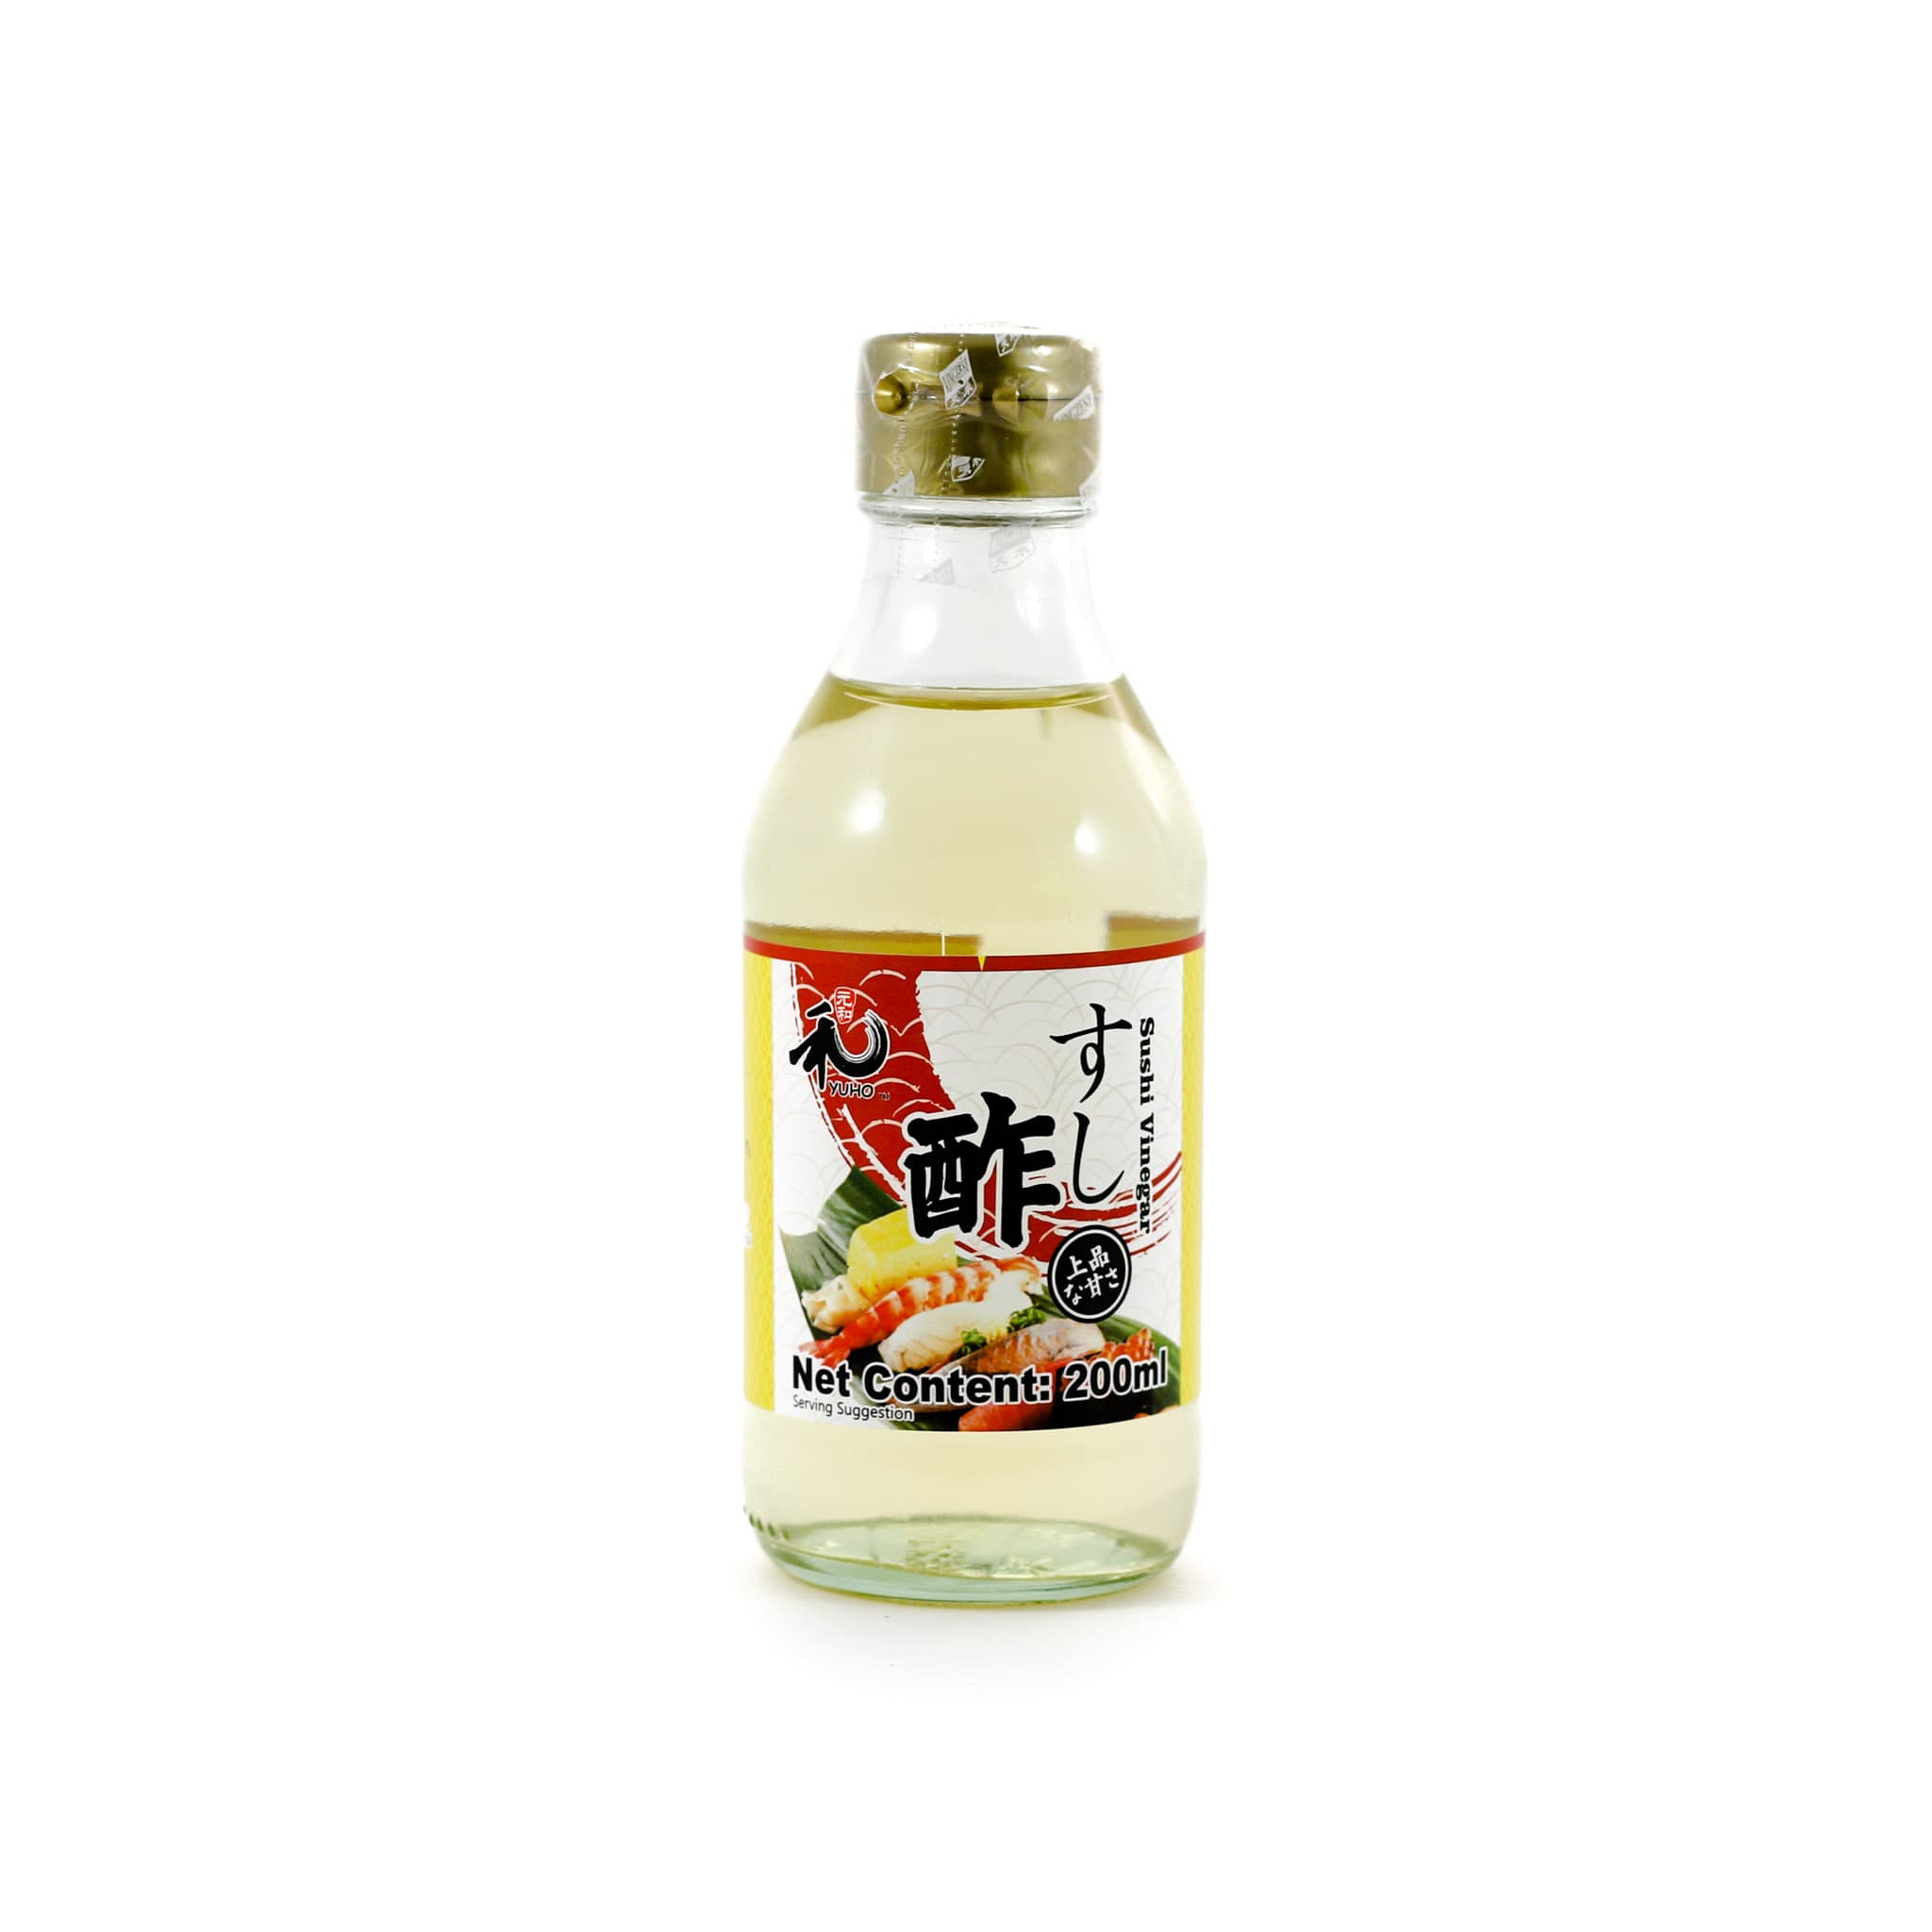 Sushi Vinegar 200ml